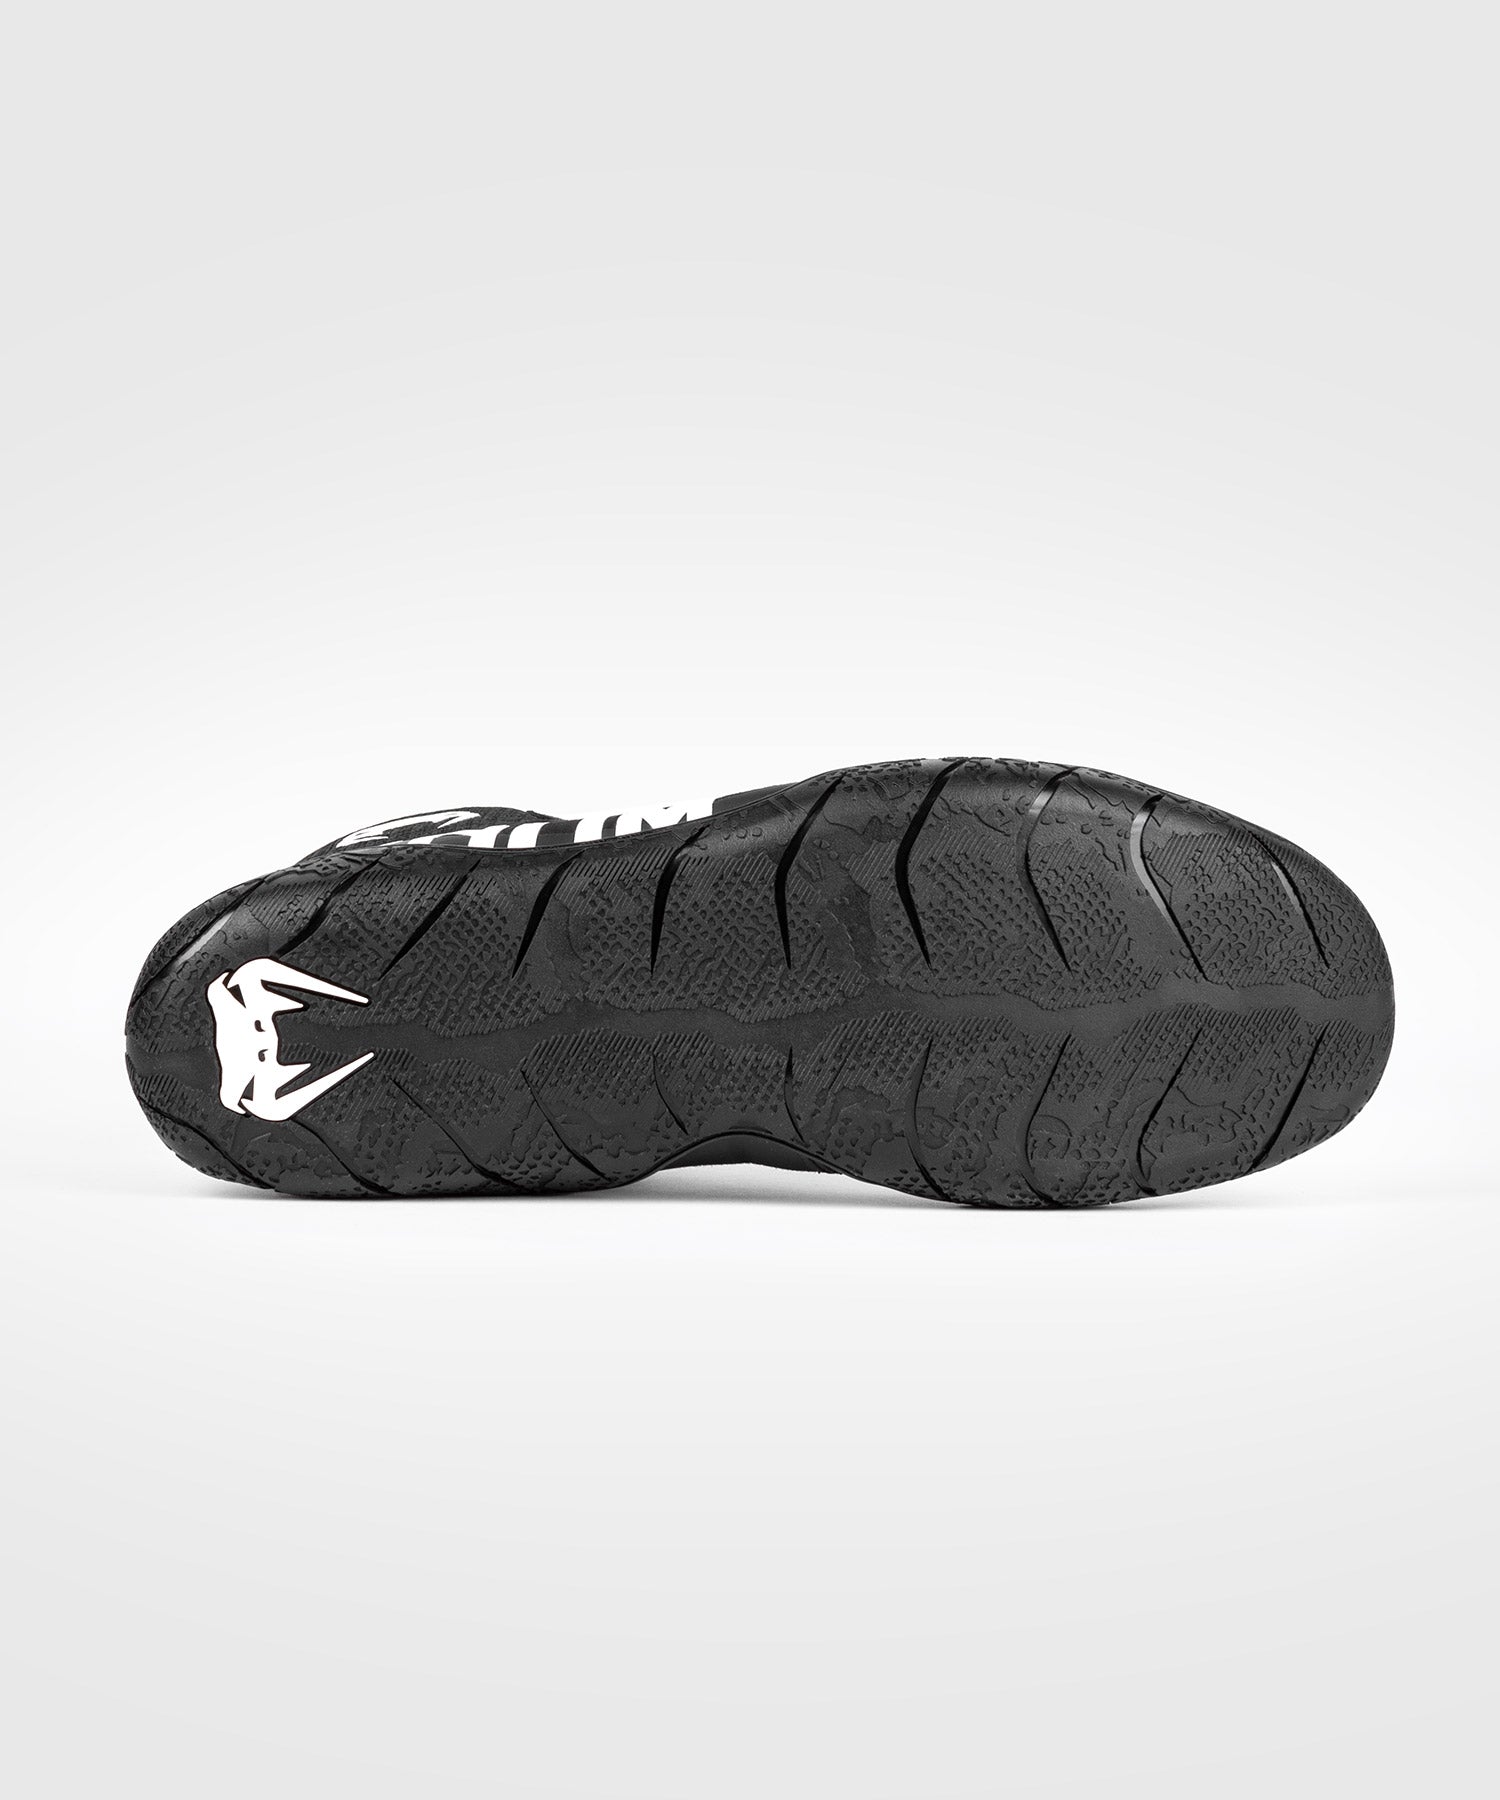 Chaussures de boxe Venum Elite - Noir/Blanc - Adisport